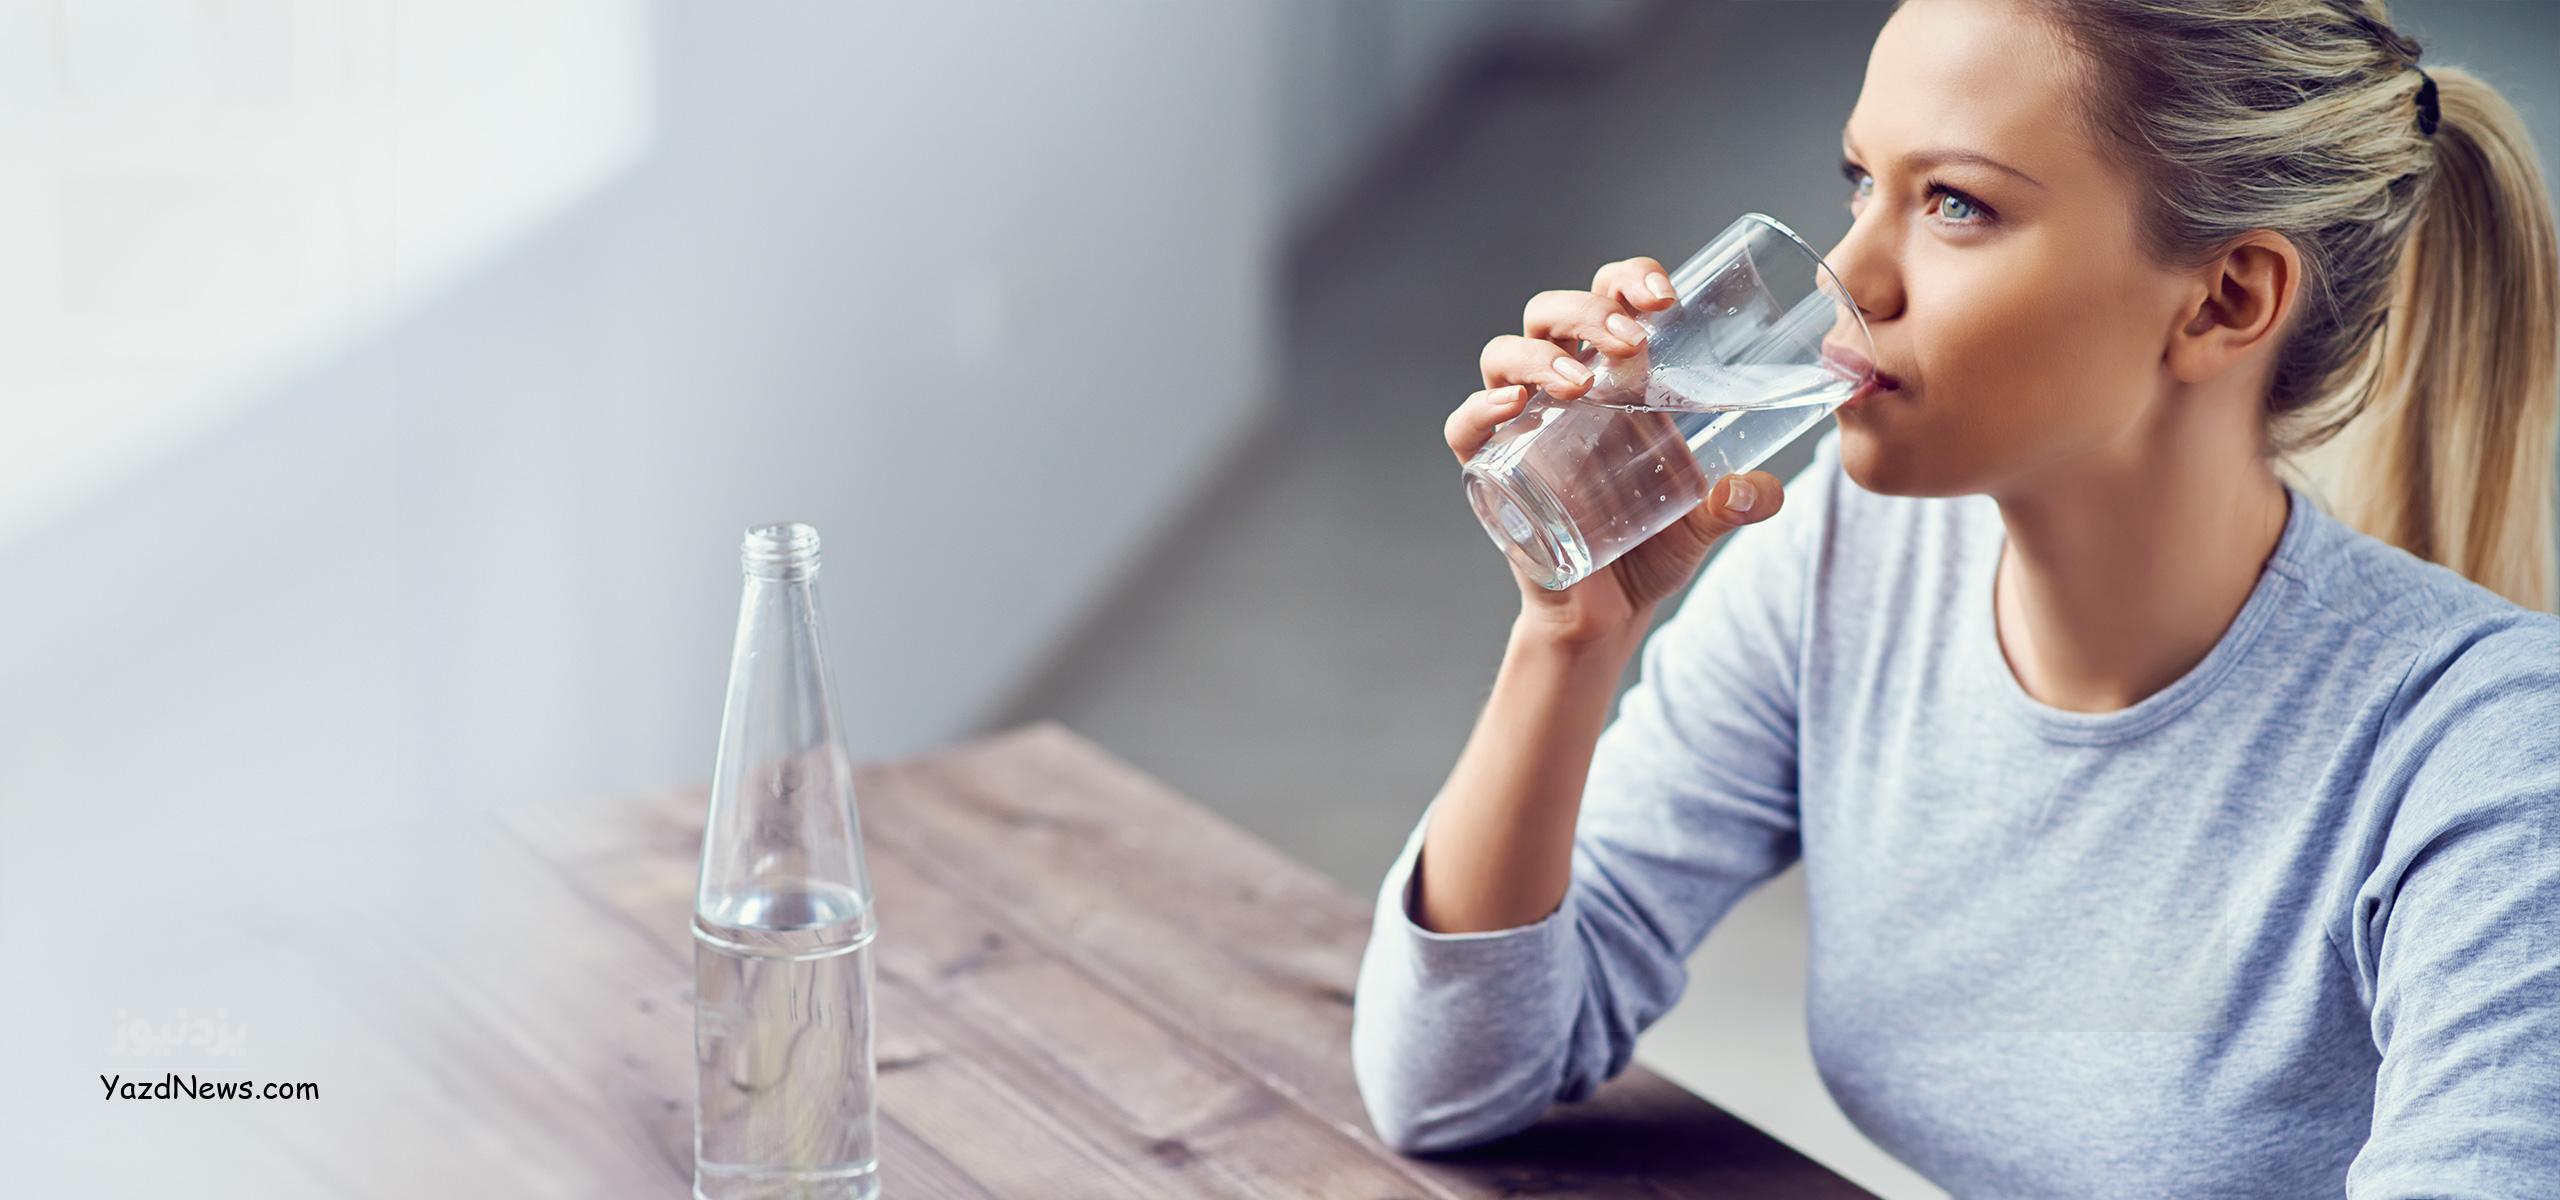 آیا می خواهید آب بیشتری بنوشید تا بدنی سالم تر داشته باشید؟